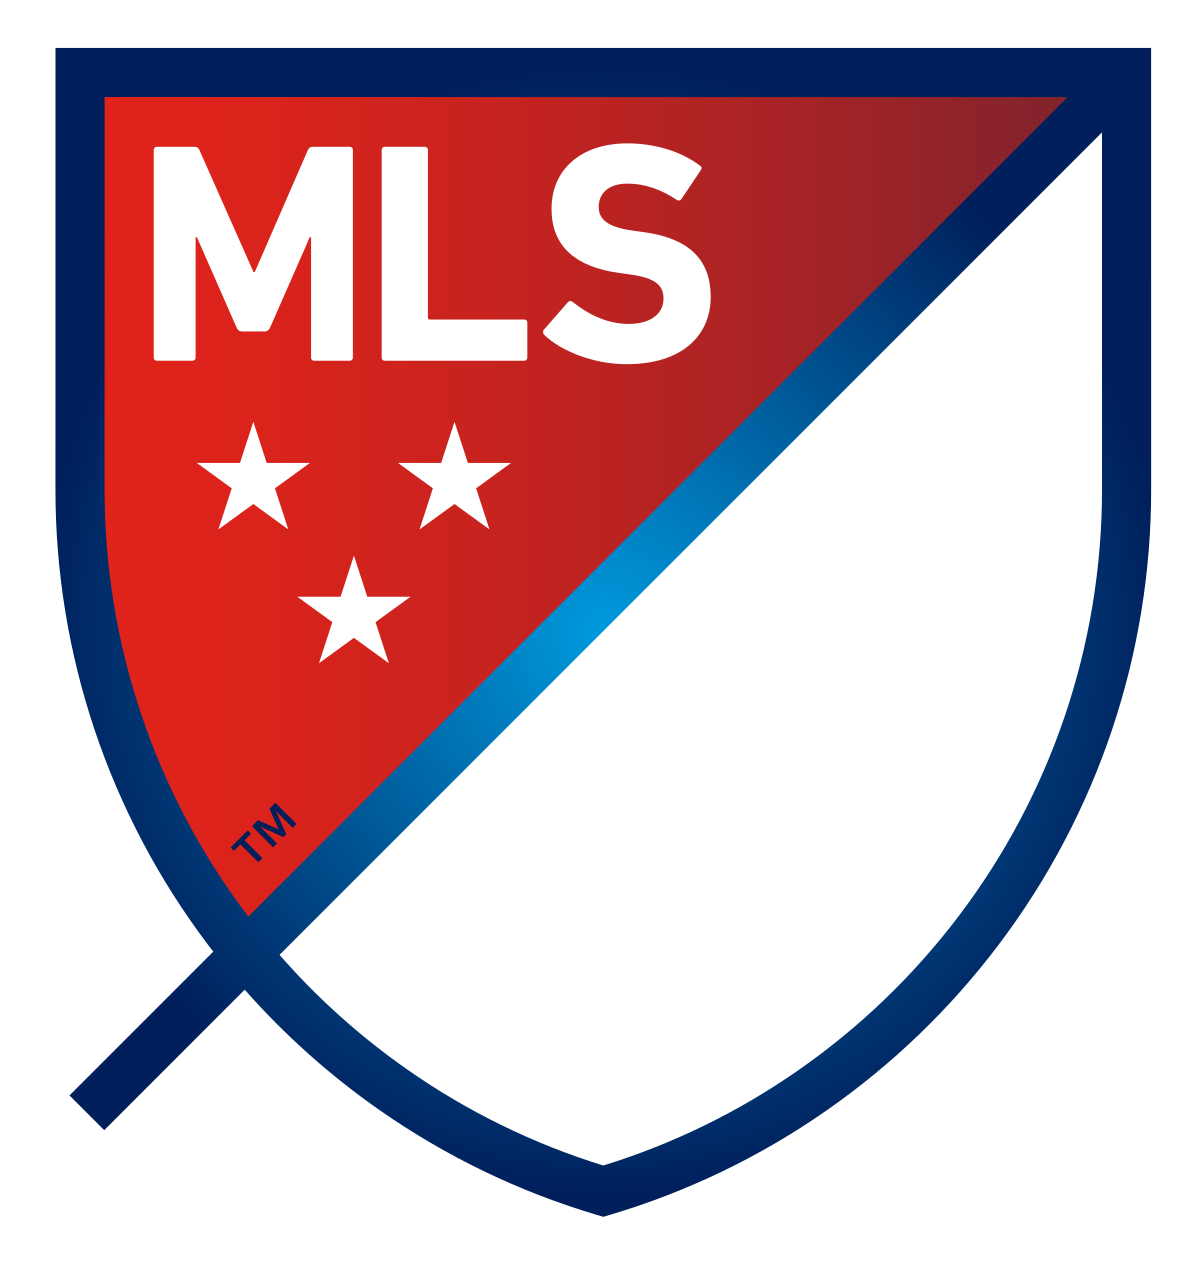 USA Major League Soccer logo